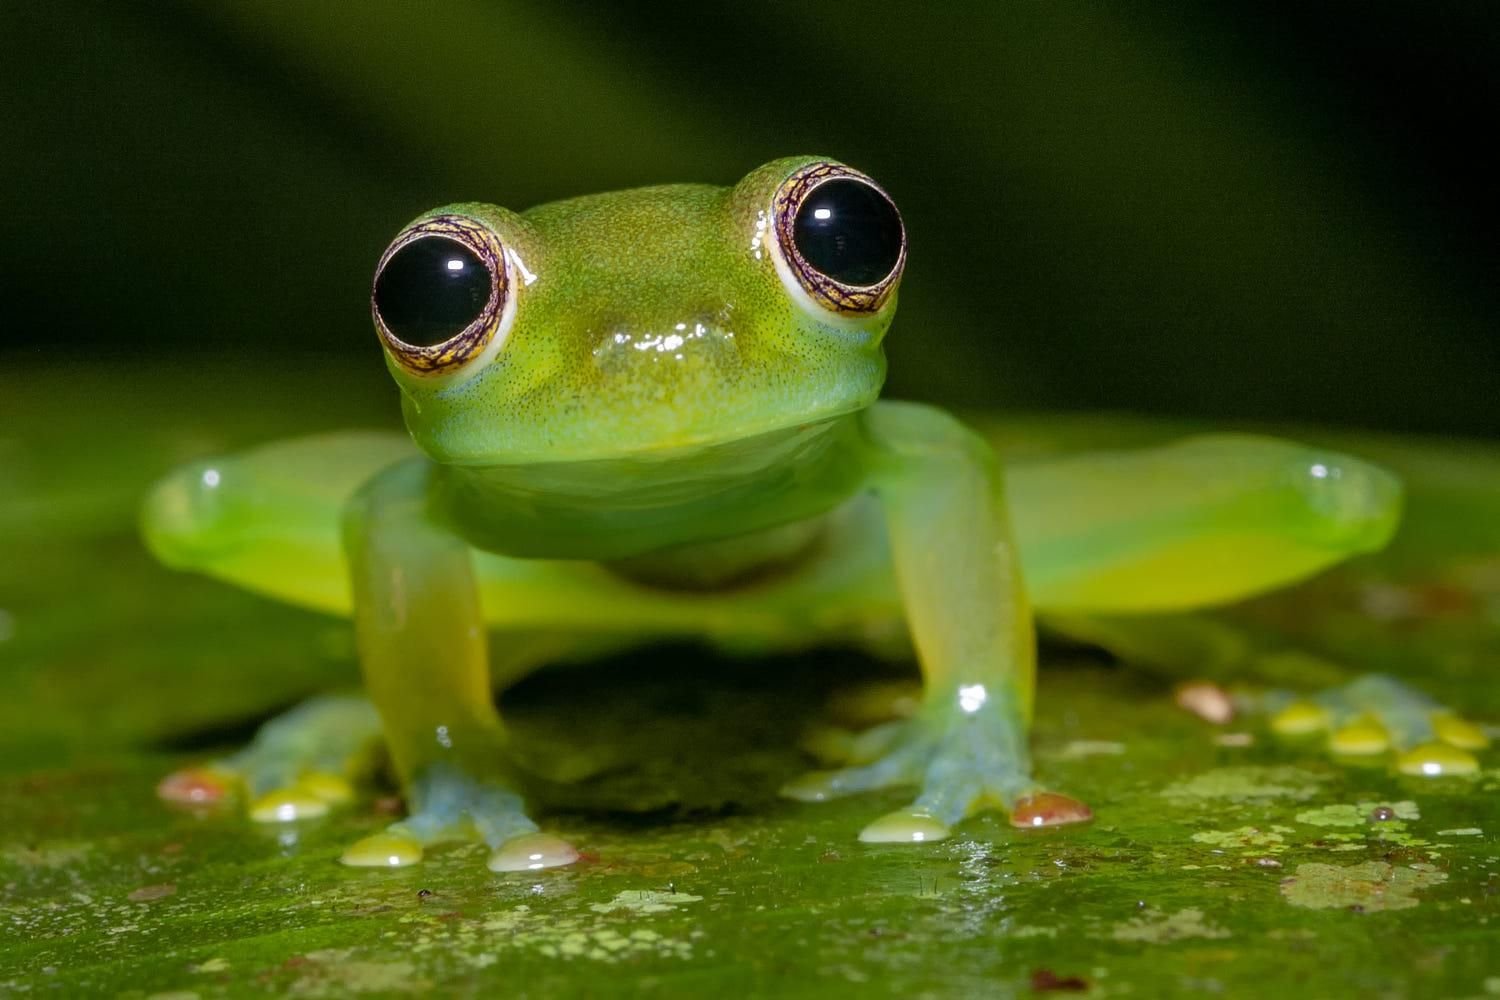 Покажи видео лягушек. Стеклянная лягушка (Glass Frog). Стеклянная лягушка Флайшмана. Макайская лягушка. Венесуэльская стеклянная лягушка.